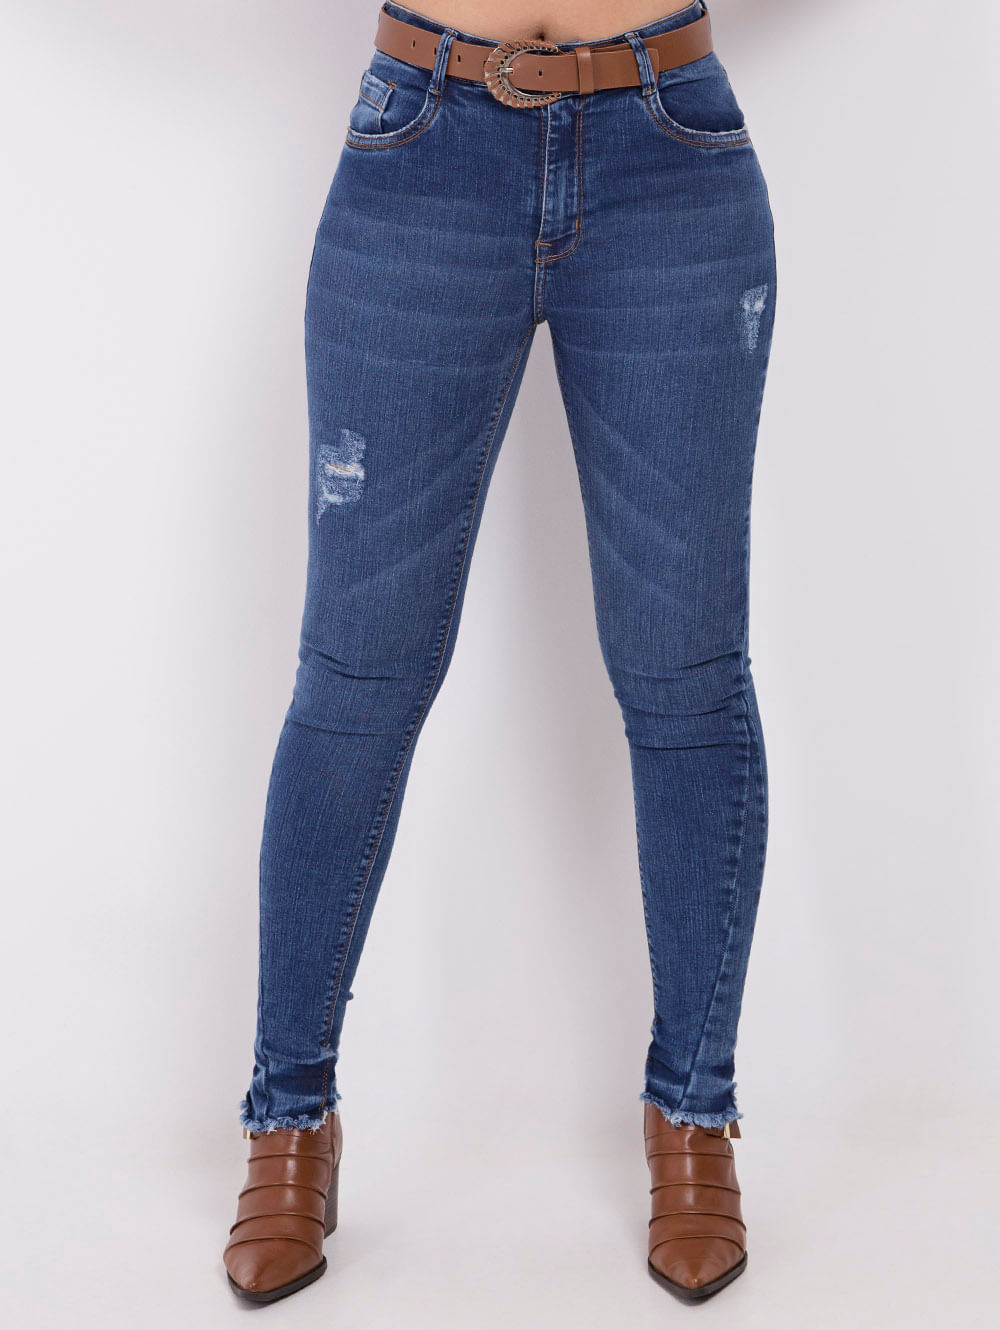 cintos femininos para usar com calça jeans